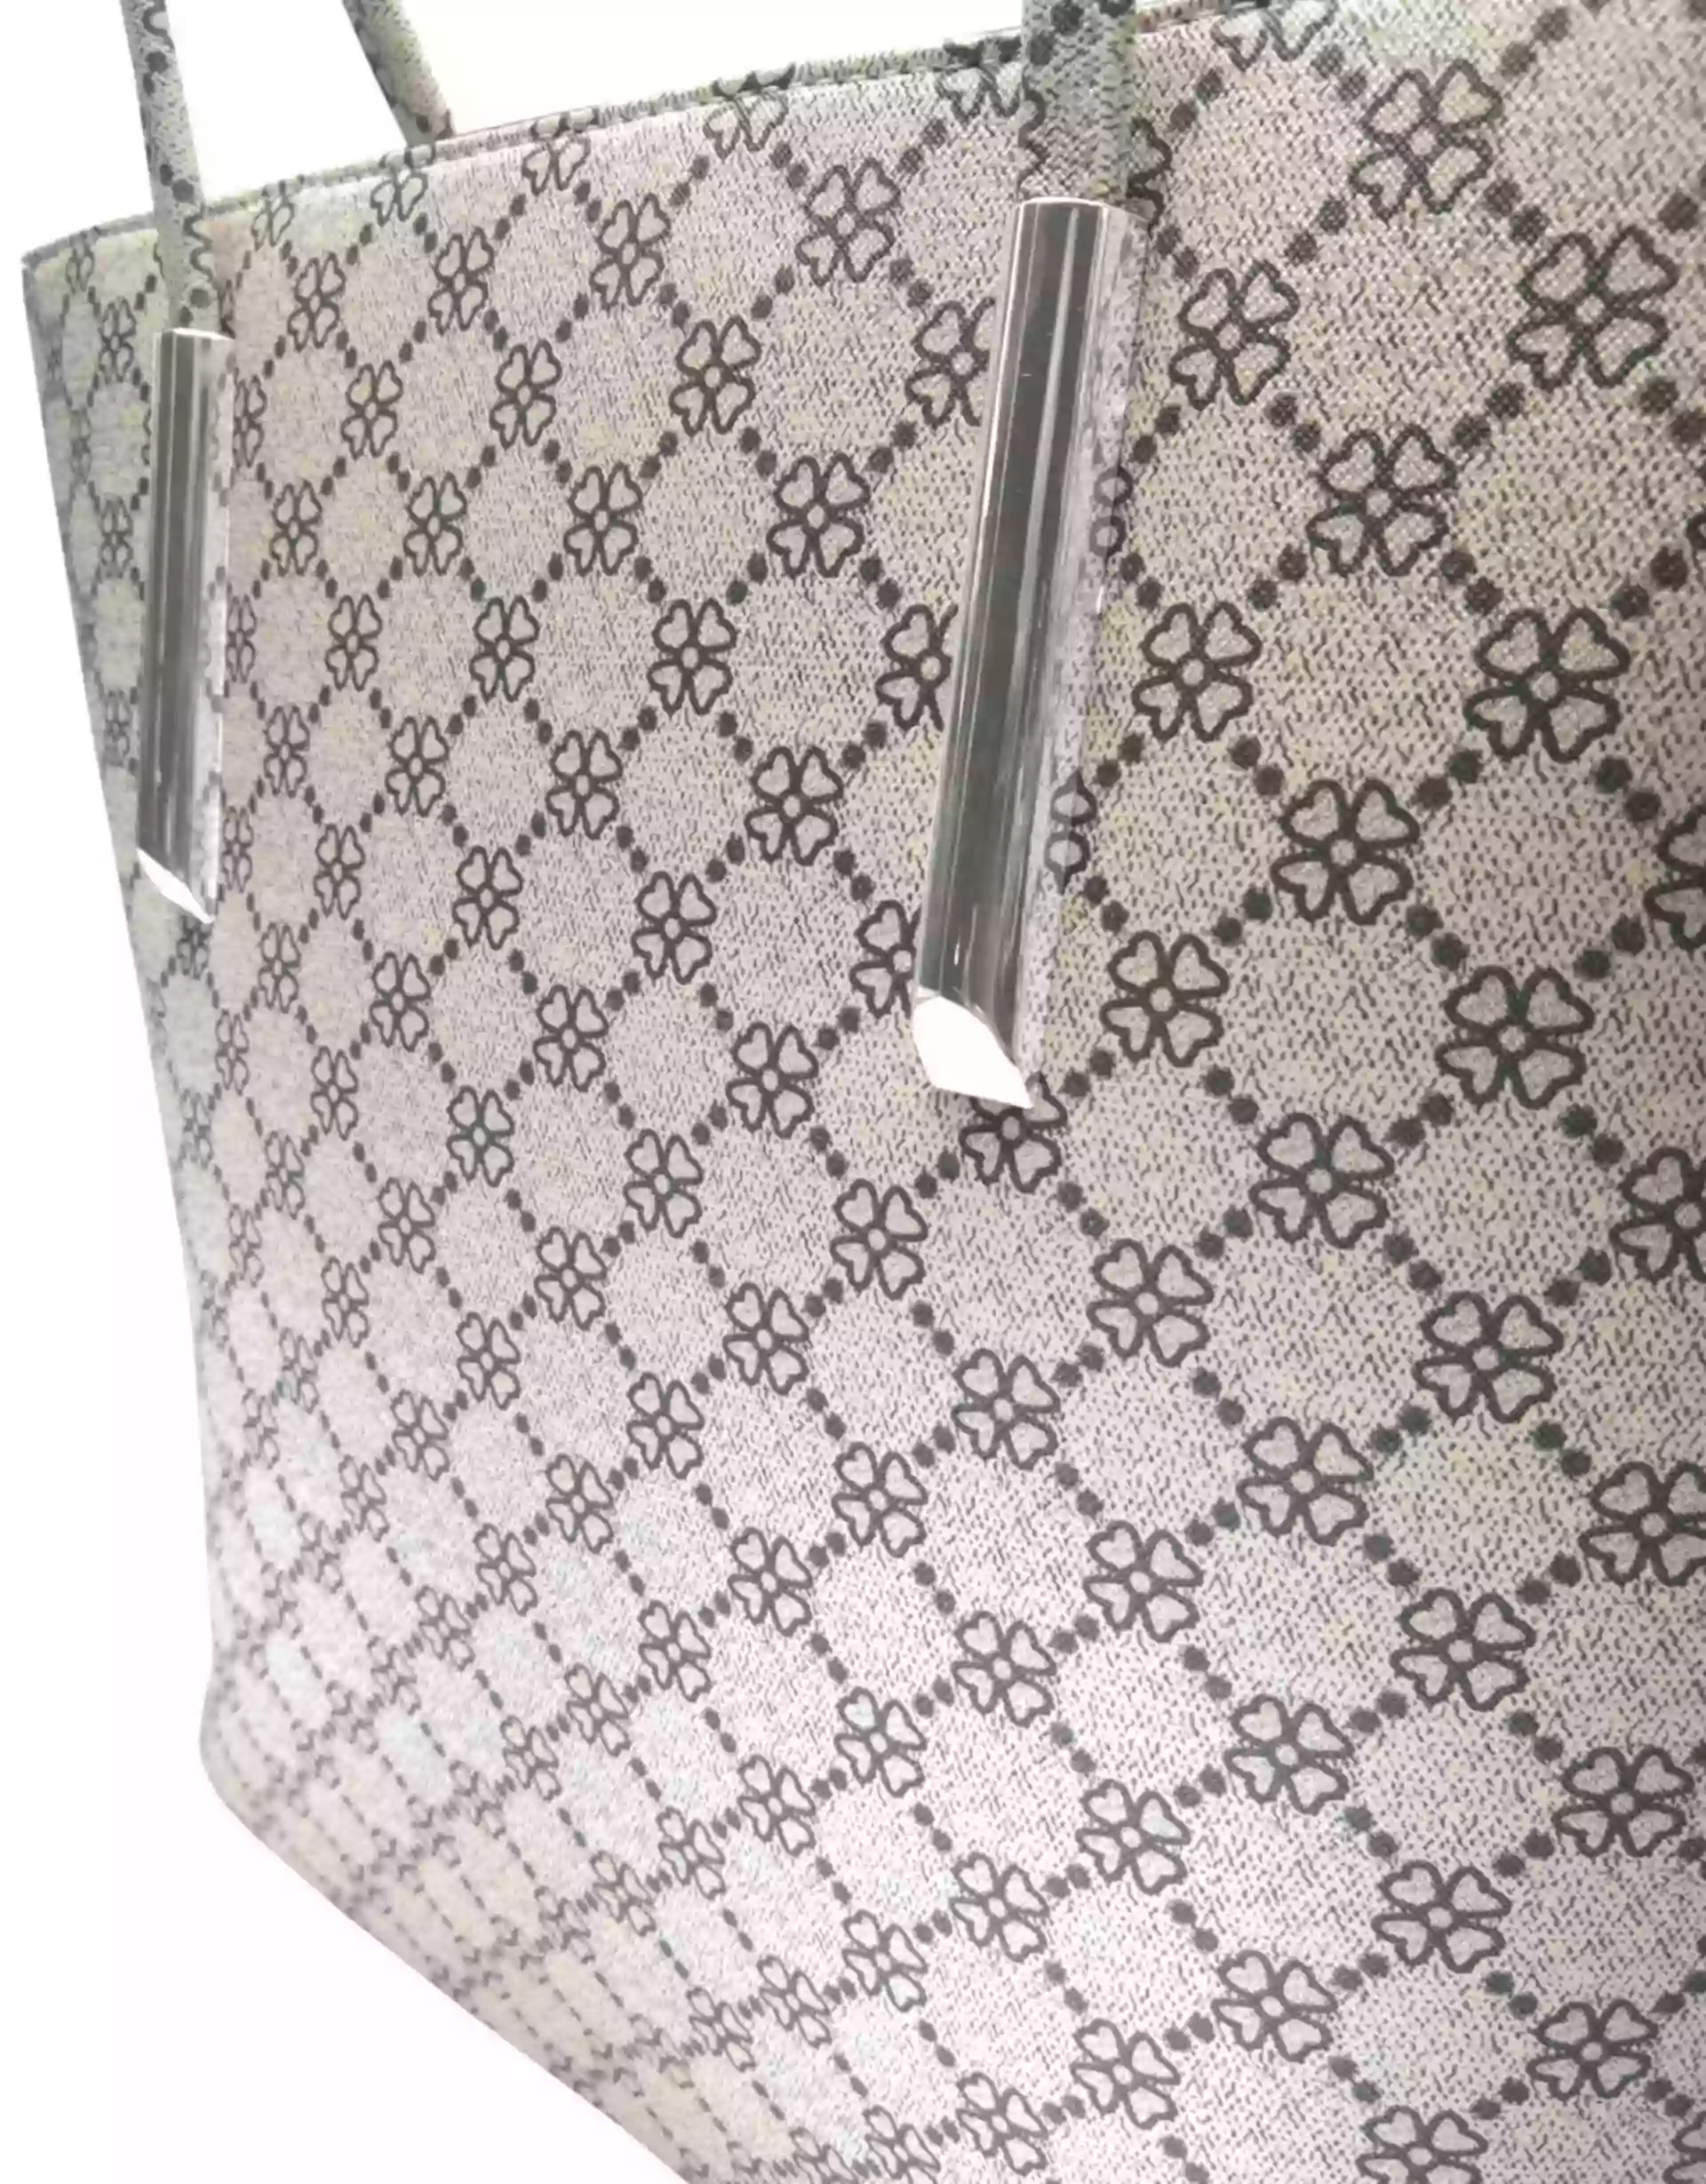 Slušivá bílá dámská kabelka s ornamenty, Tapple, H181188, detail kabelky přes rameno